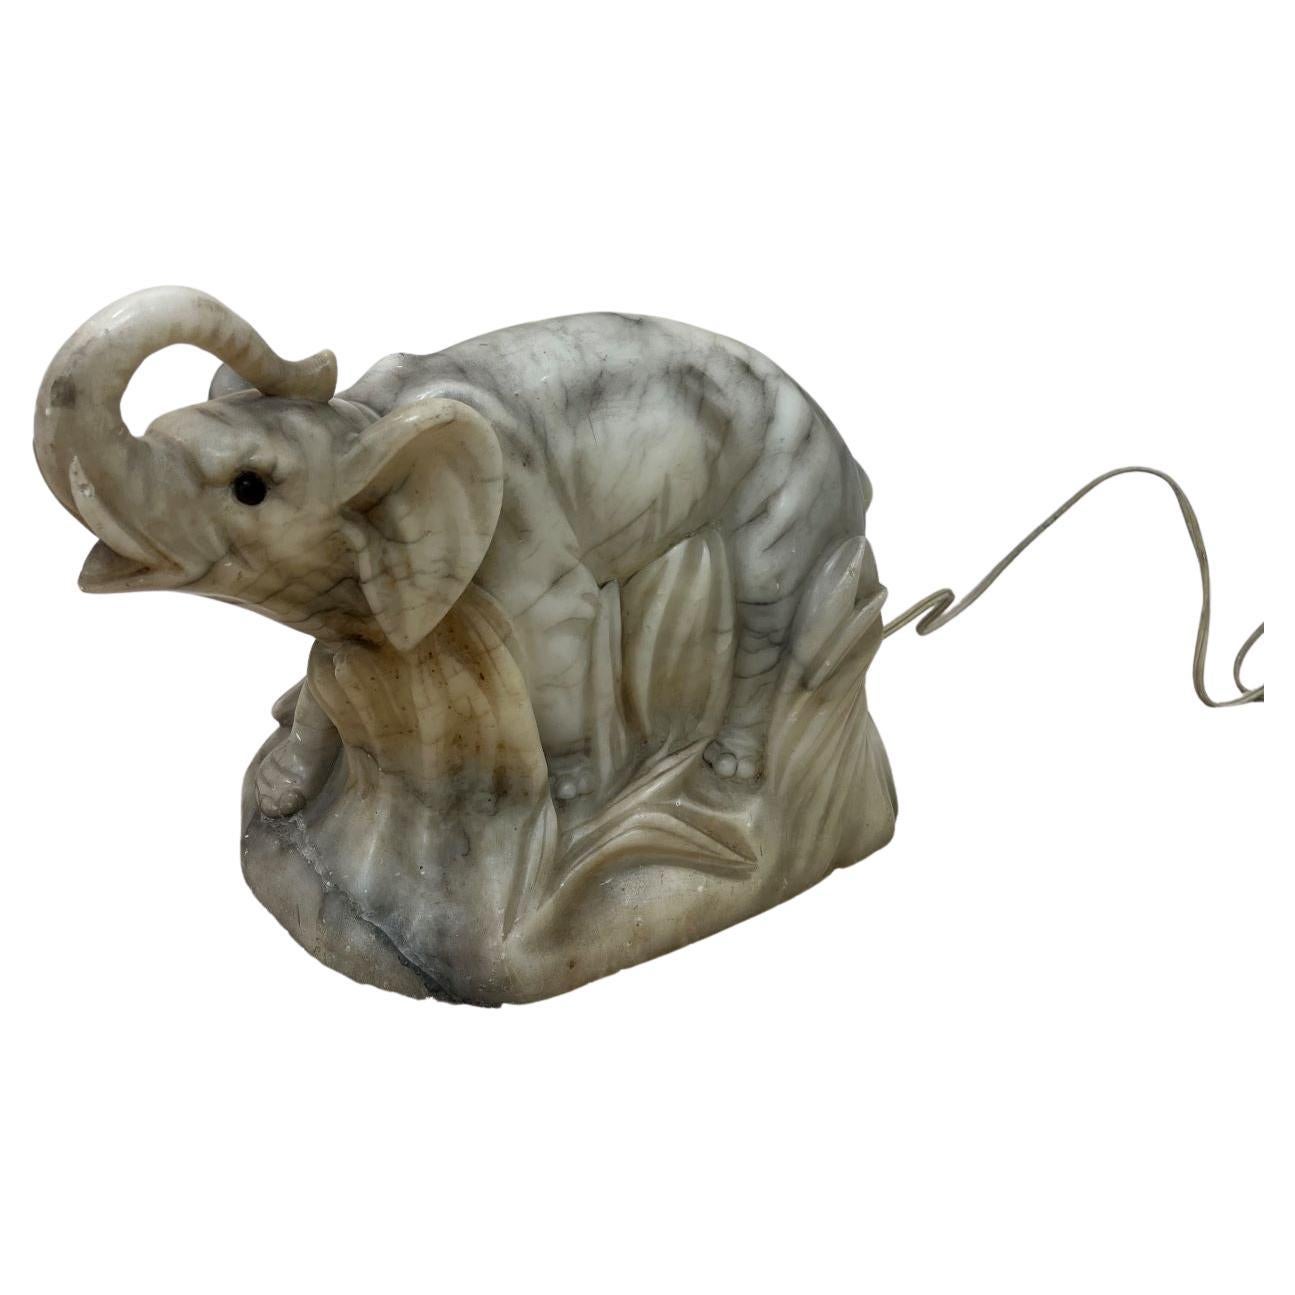  Lampe éléphant en albâtre sculpté Art Déco / Art Nouveau vers 1920-1930.  Lorsqu'elle est allumée, la lampe émet une belle lueur chaleureuse. Il présente une légère usure et des bords usés, et a peut-être été réparé au cours de sa vie. Cette